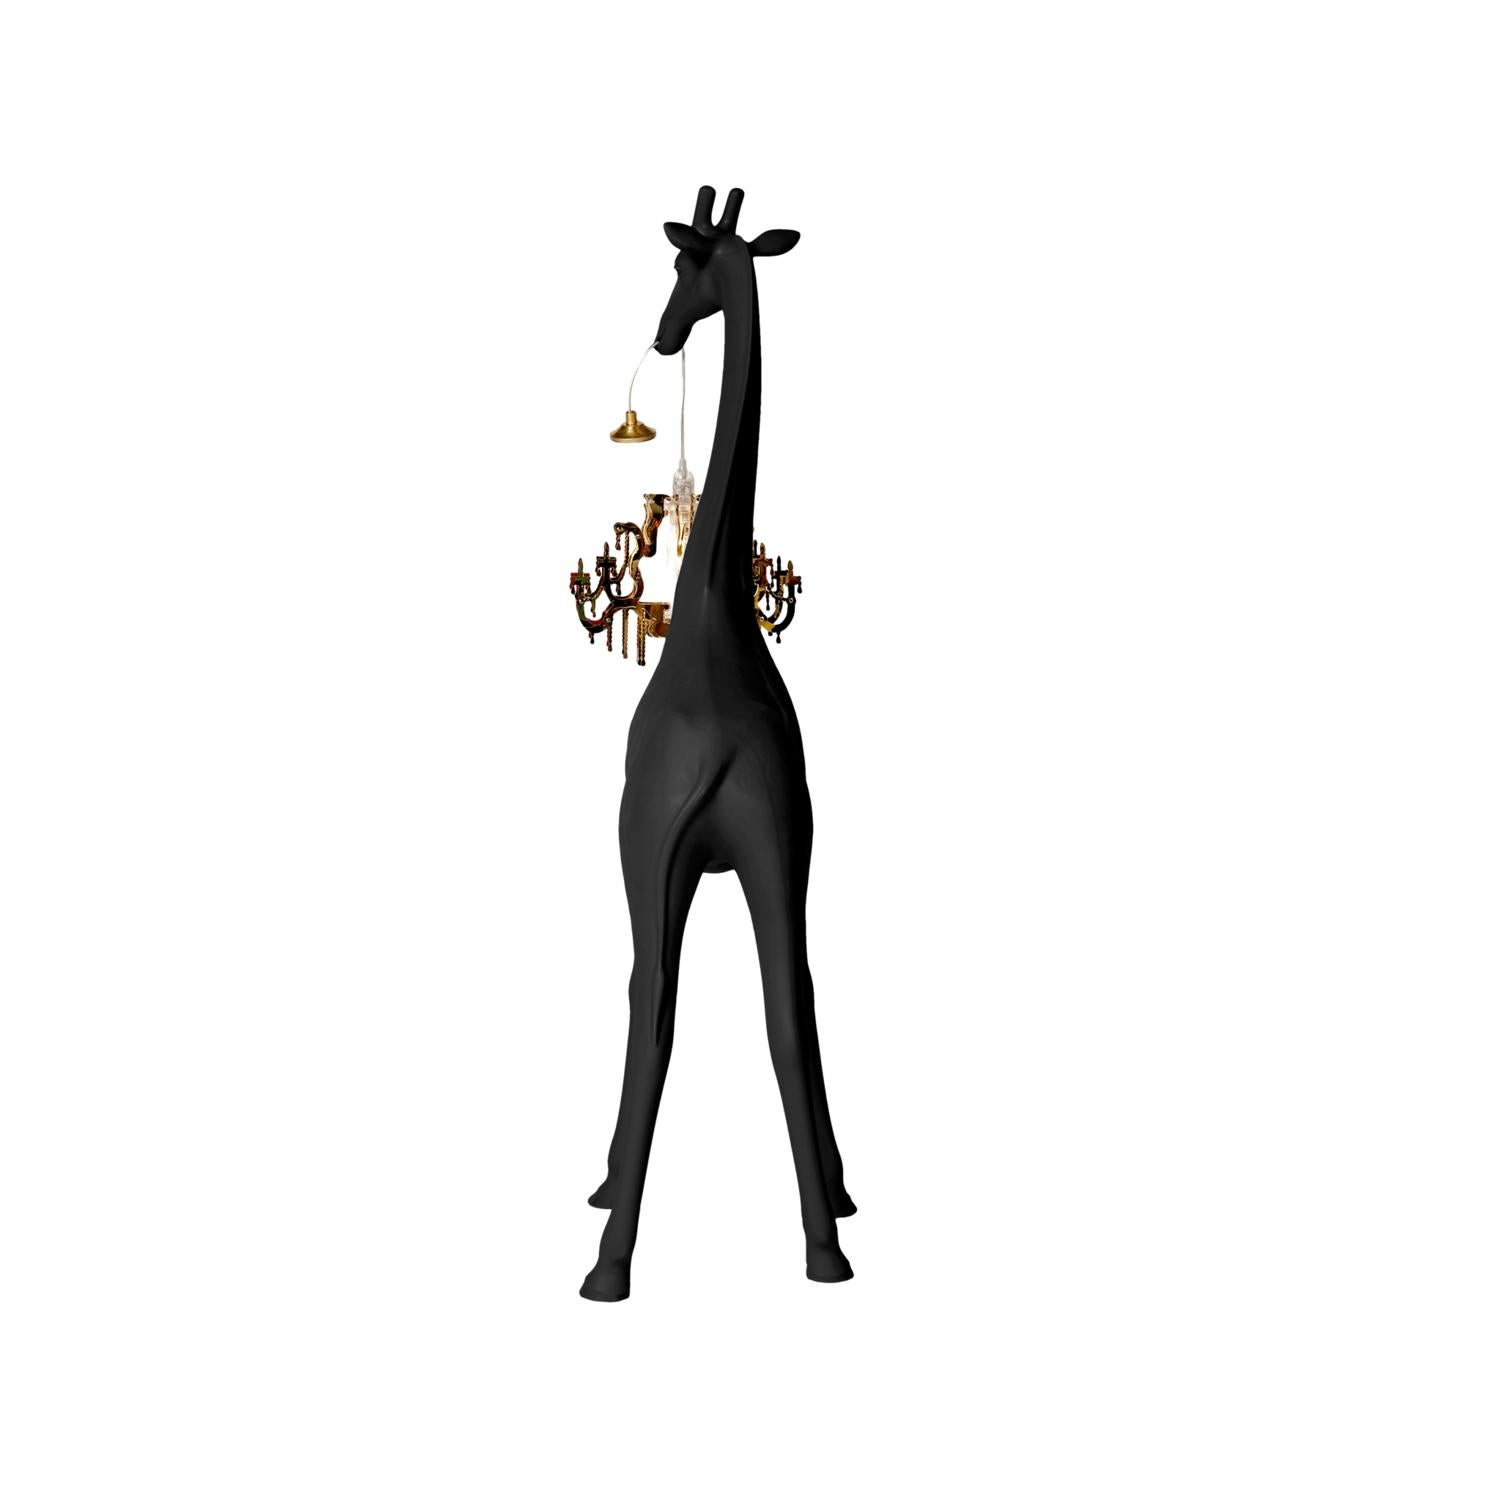 In Stock in Los Angeles, Black Giraffe in Love XS Chandelier by Marcantonio 4